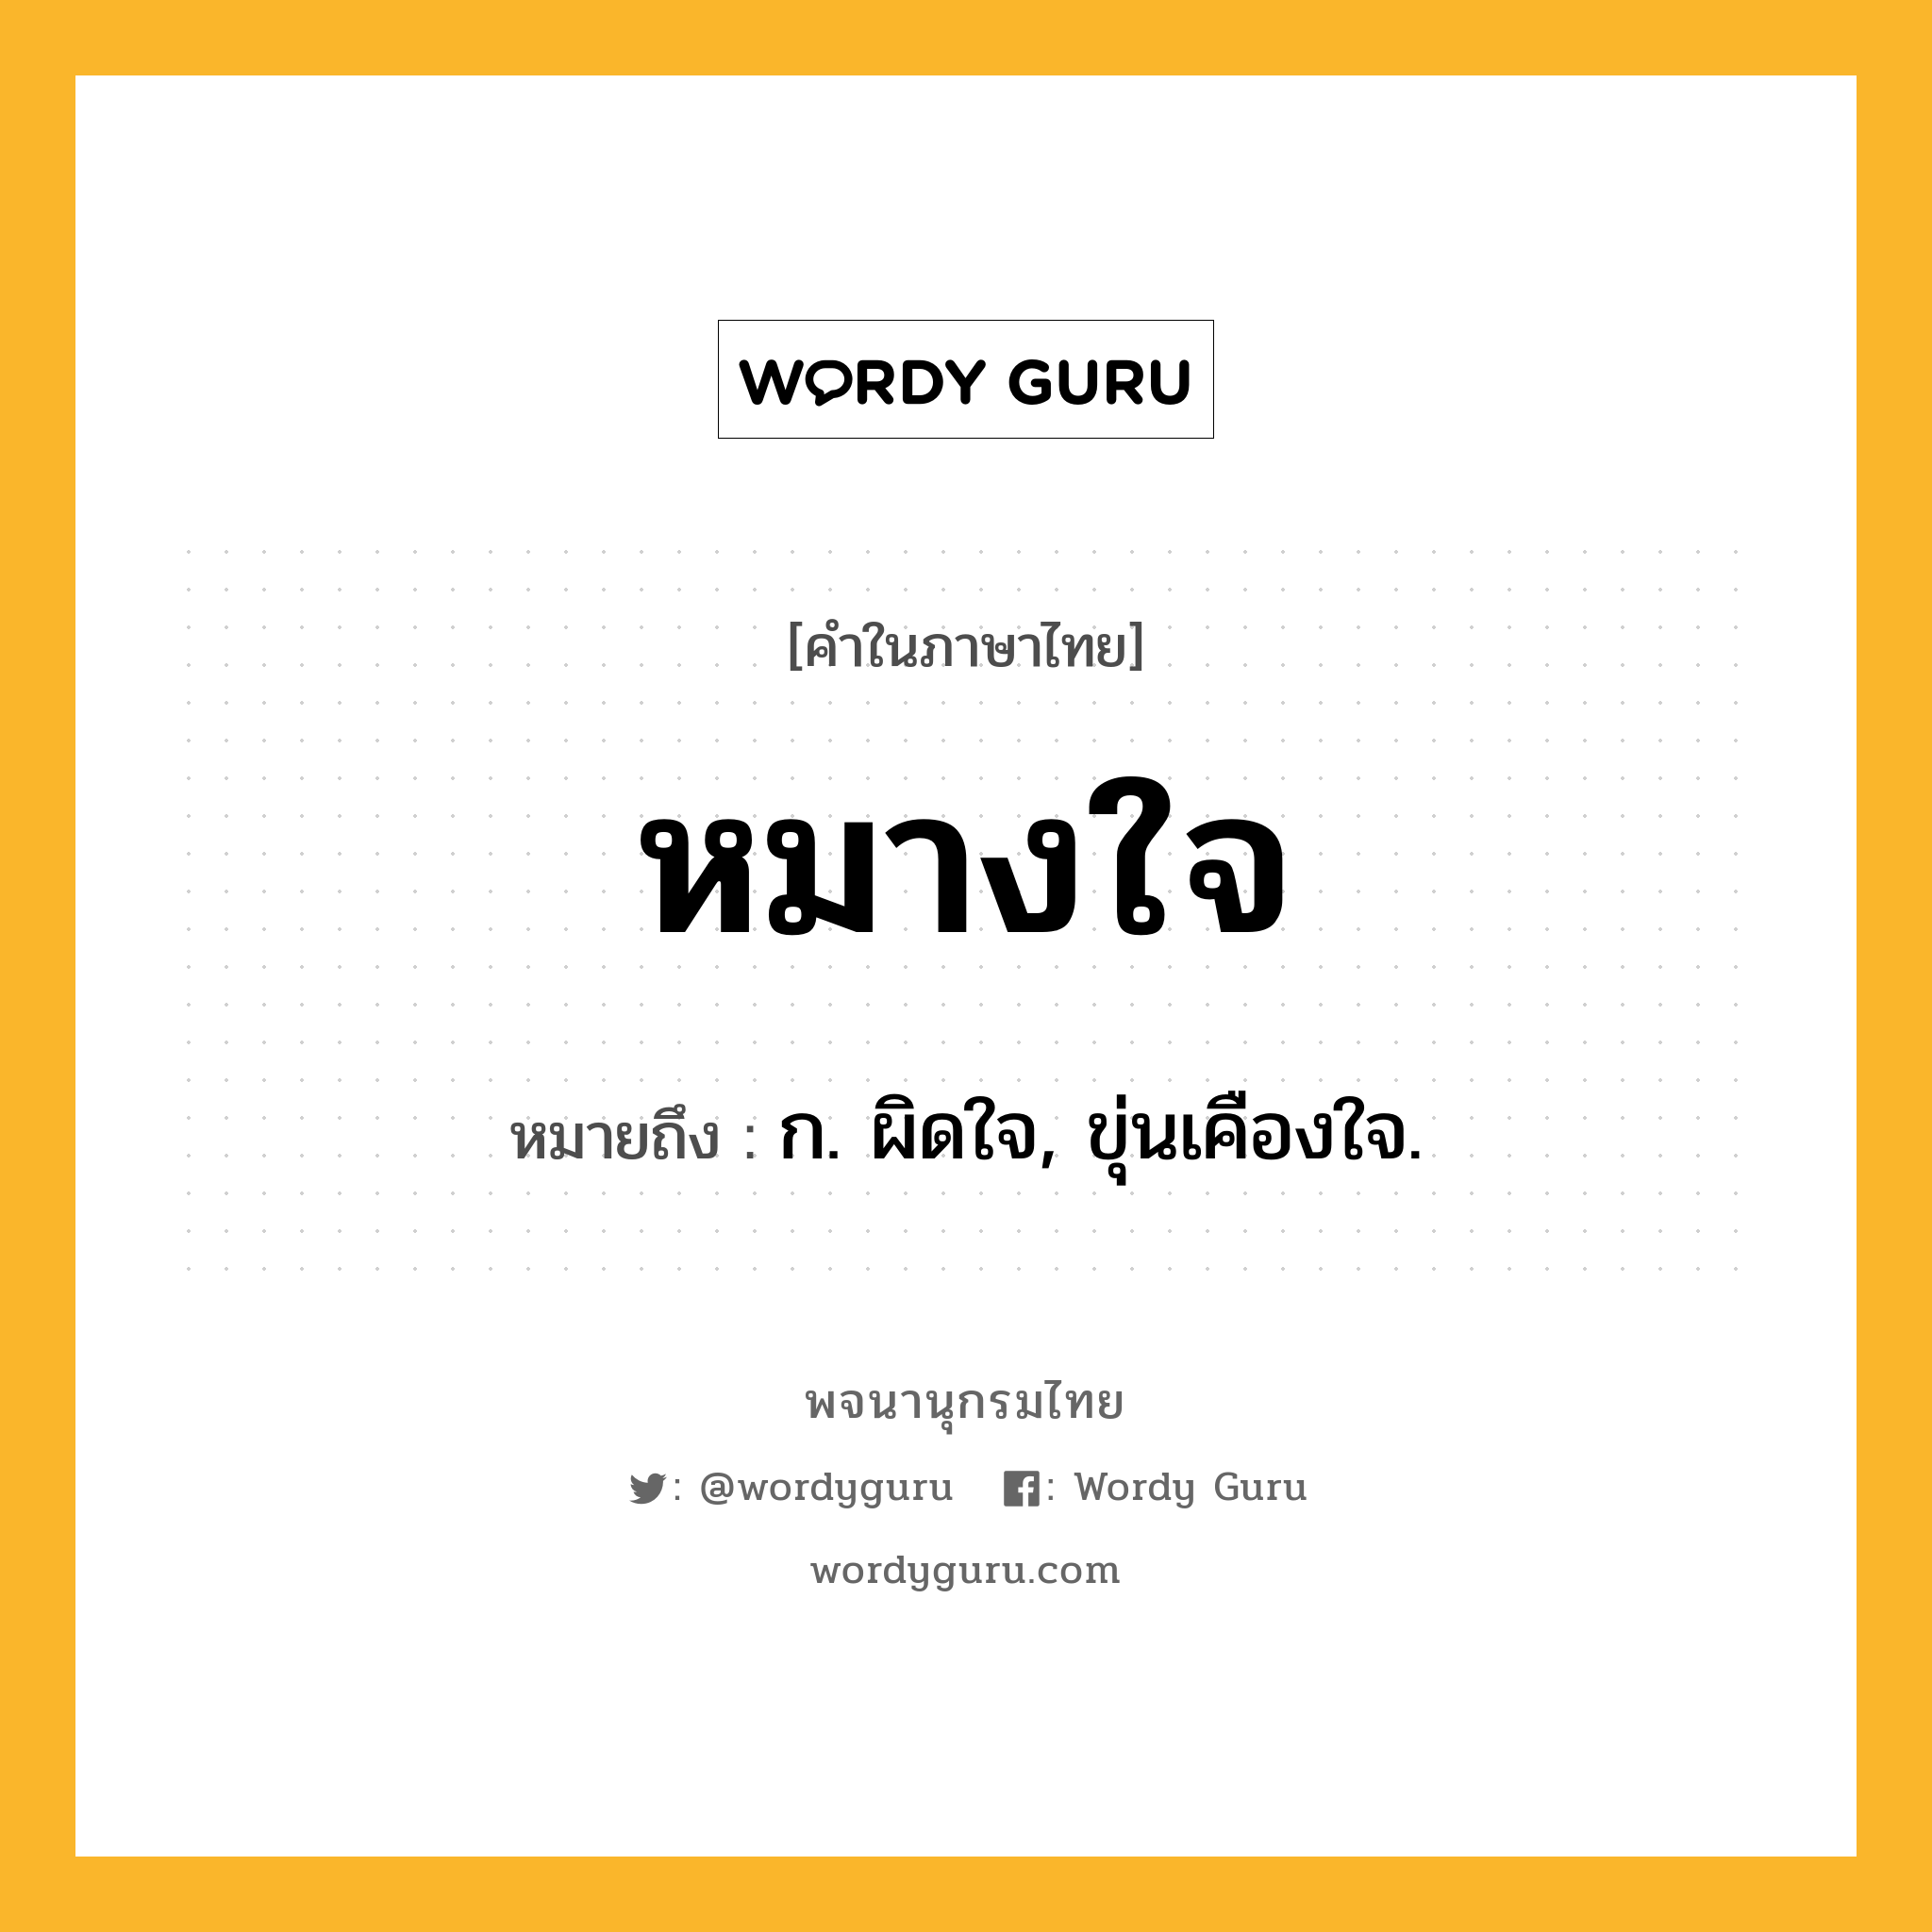 หมางใจ หมายถึงอะไร?, คำในภาษาไทย หมางใจ หมายถึง ก. ผิดใจ, ขุ่นเคืองใจ.